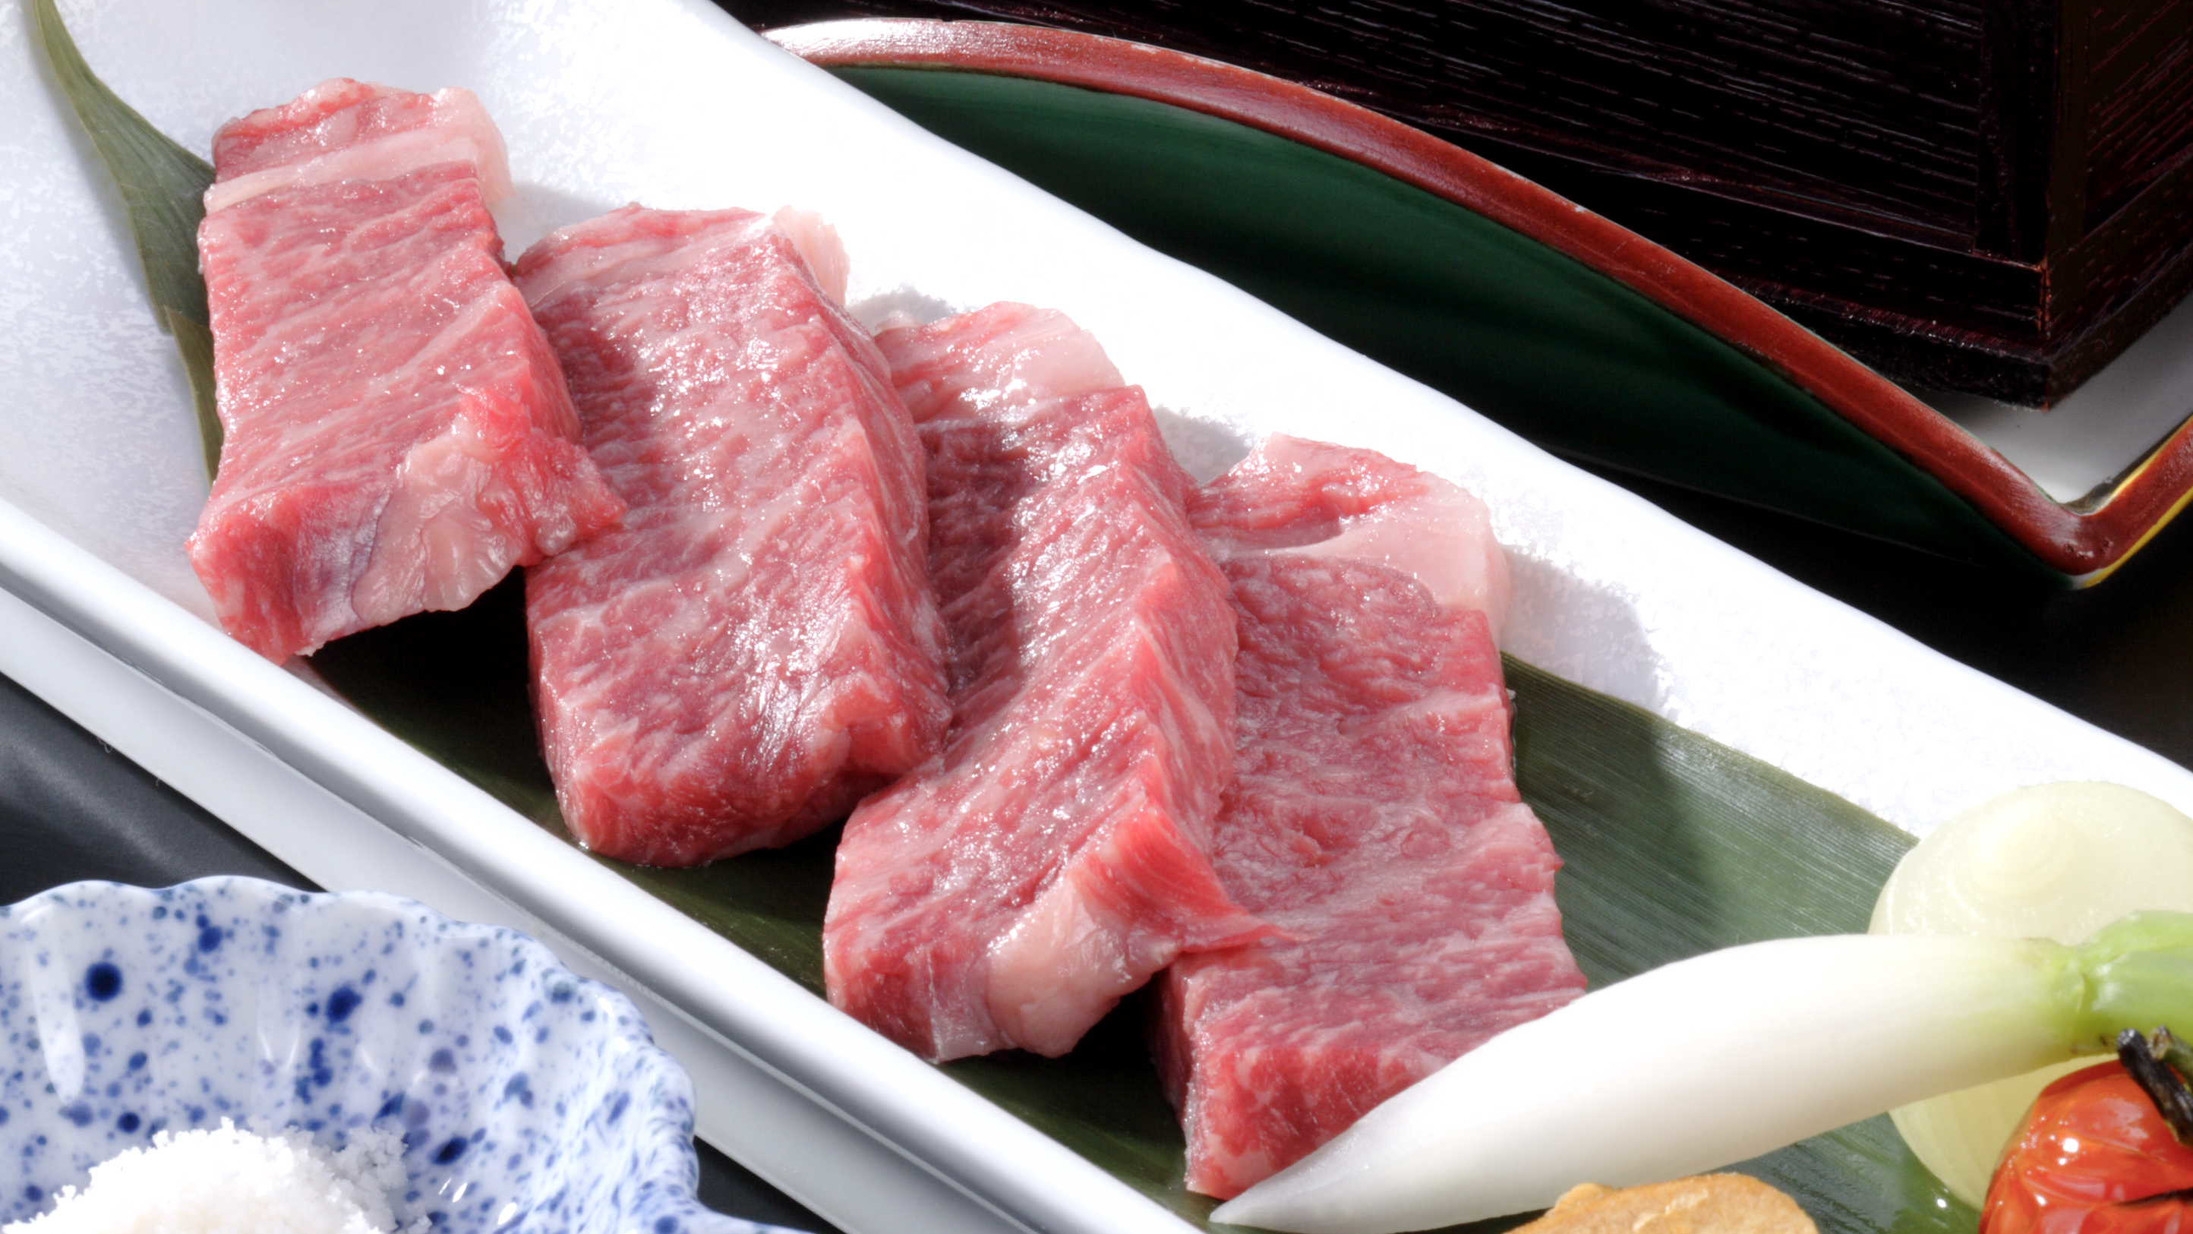 『特選・至福』ぷりっぷり伊勢えびと肉汁あふれる三重県産黒毛和牛ロースステーキを愉しむ。